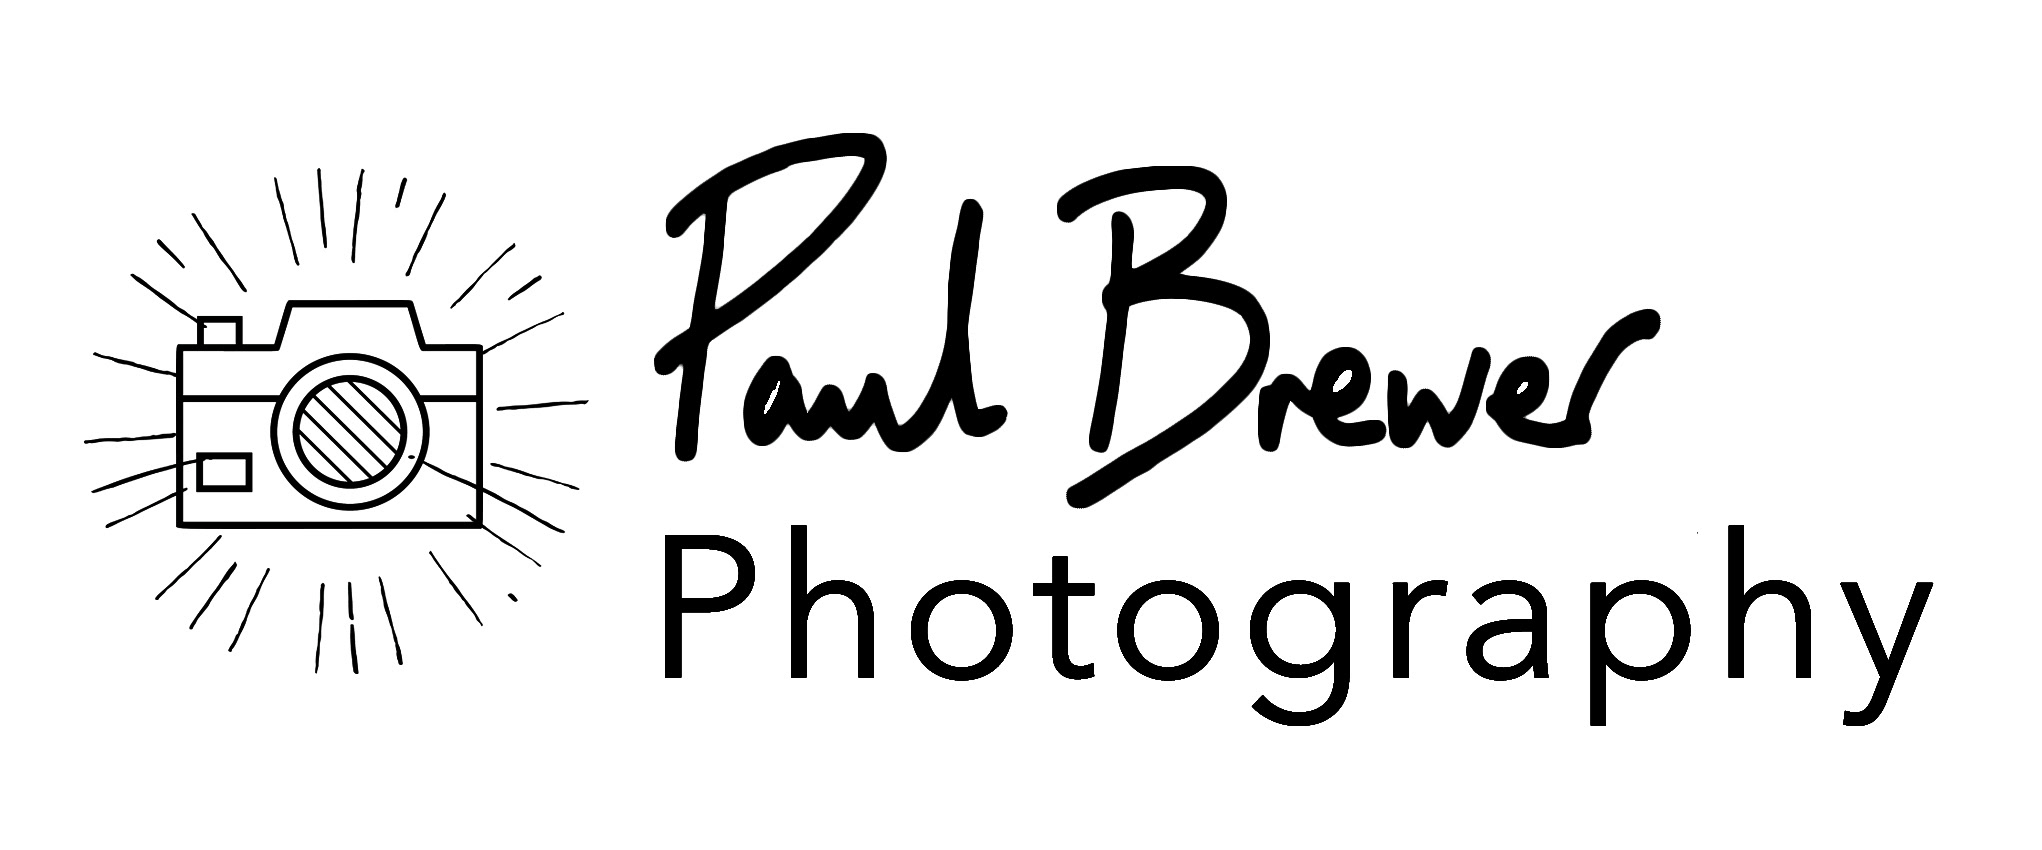 Paul Brewer